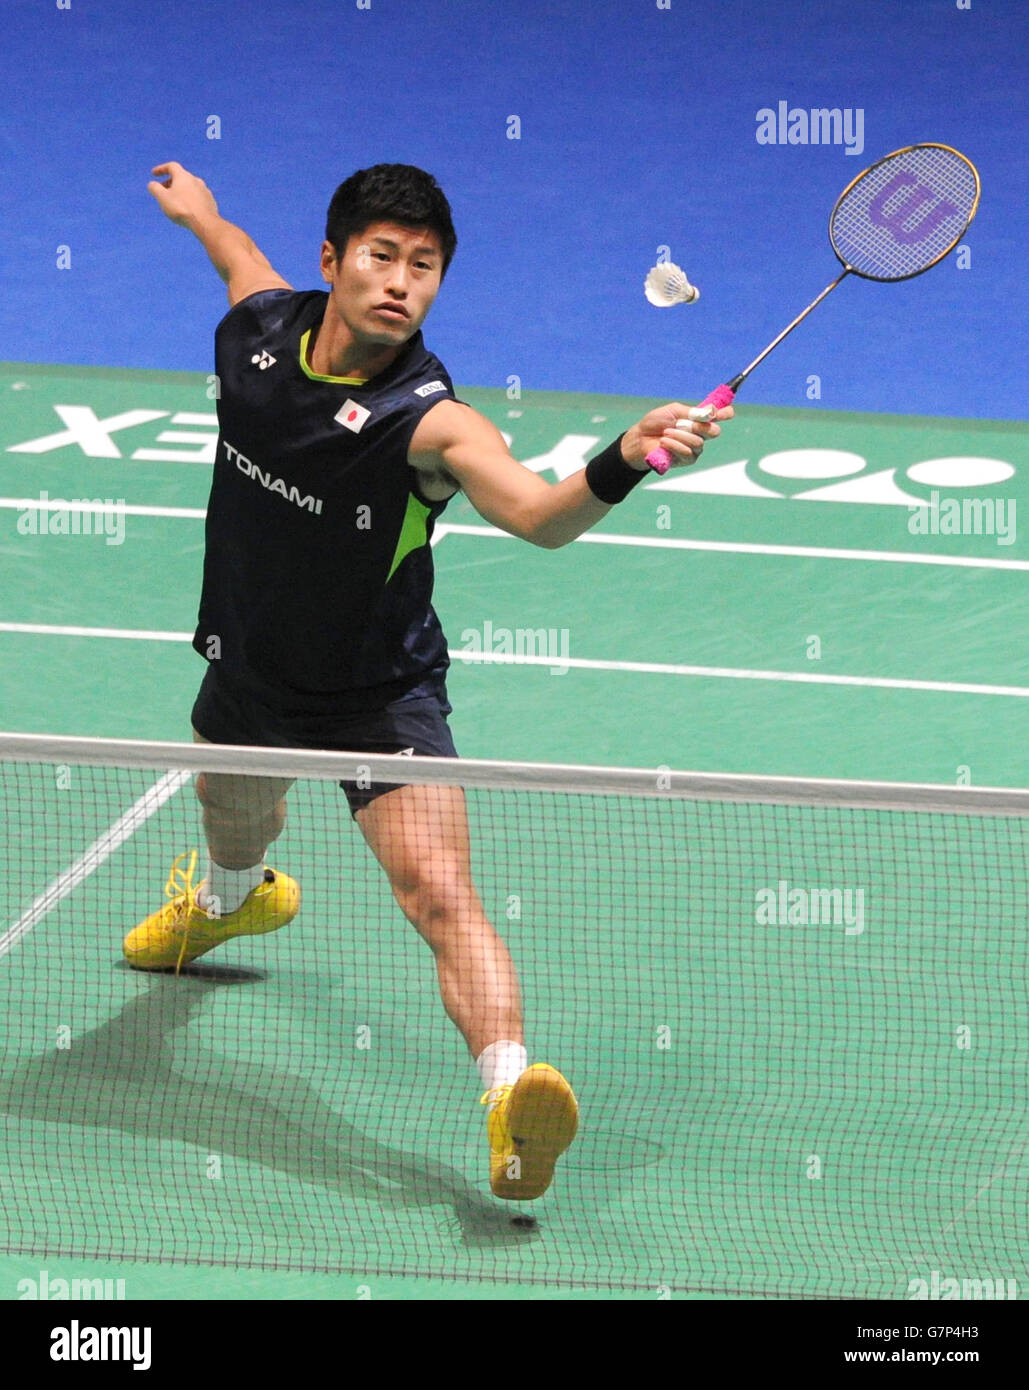 Sho Sasaki au Japon joue un tir pendant le deuxième jour des 2015 championnats de badminton Yonex de toute l'Angleterre à la Barclaycard Arena, Birmingham. Banque D'Images